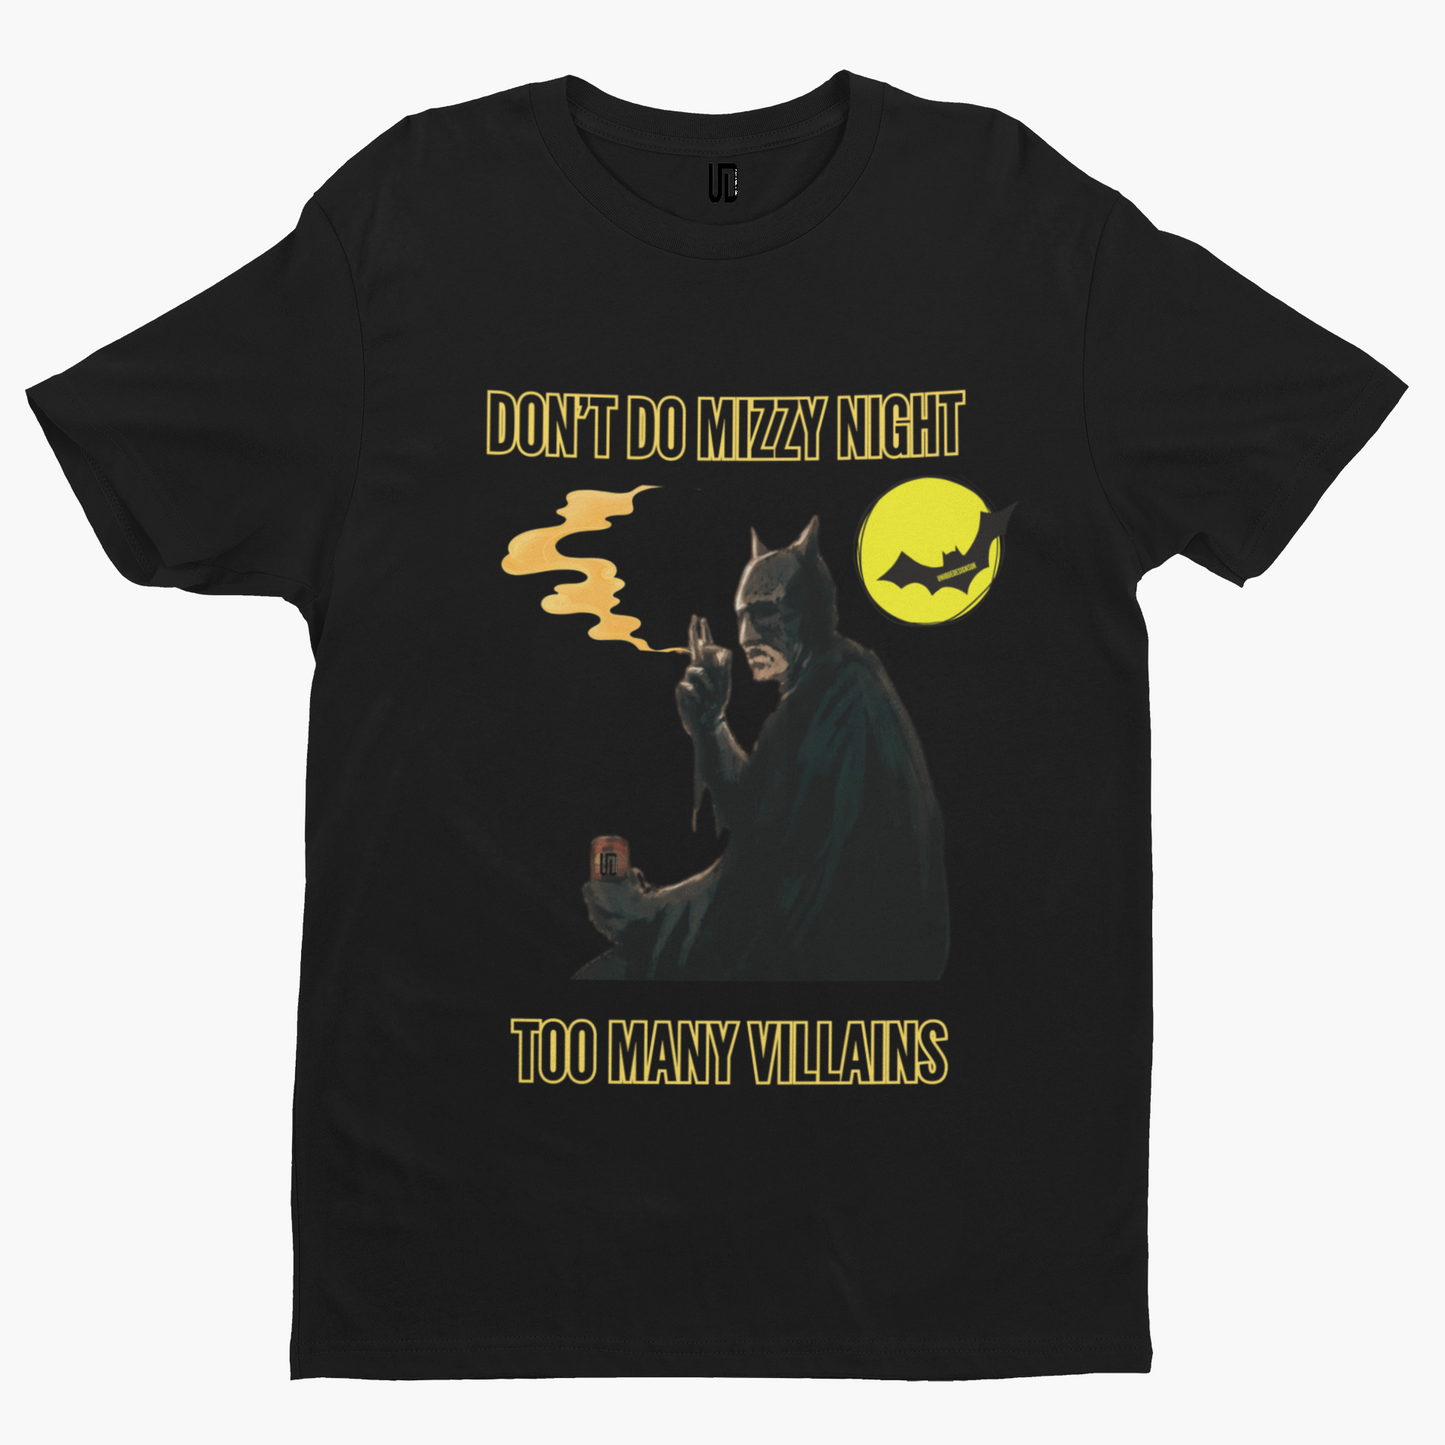 Scouse Batman T-Shirt - Unique Designs UK Collection Liverpool Funny Film Movie